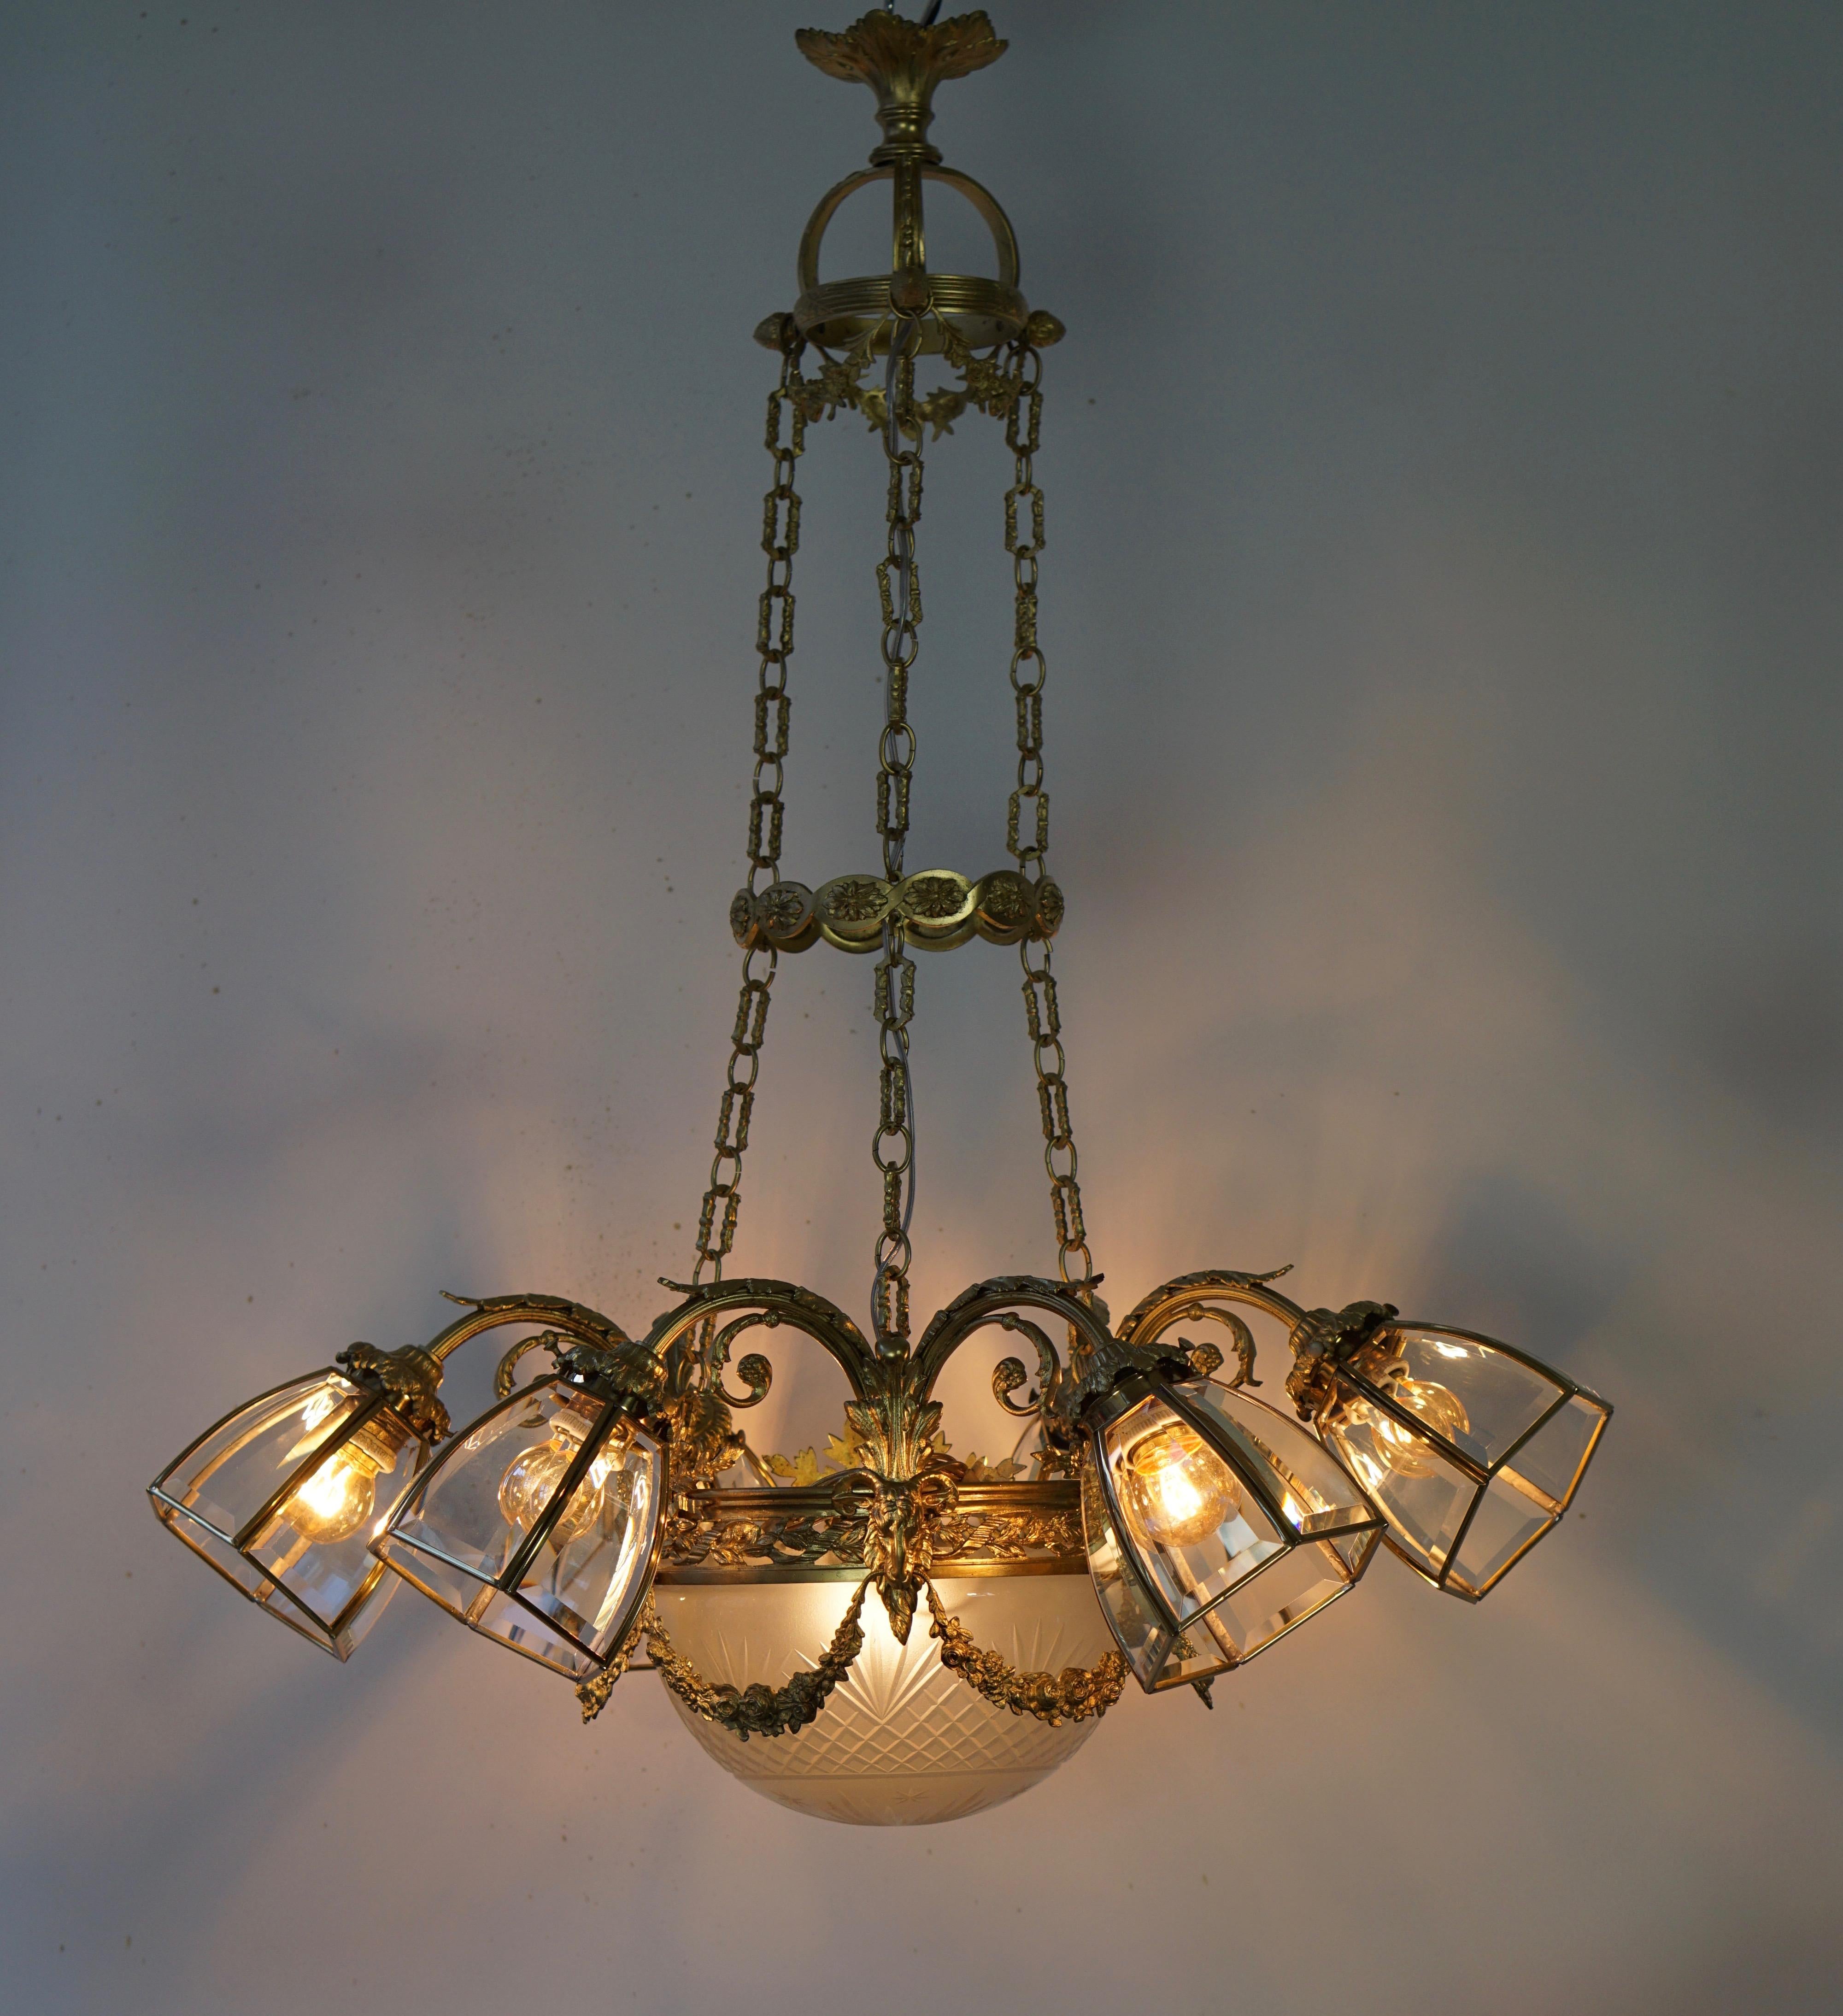 Victorian gilt bronze six-light chandelier.
Measures: Diameter 75 cm.
Height 90 cm.
Six E27 bulbs.